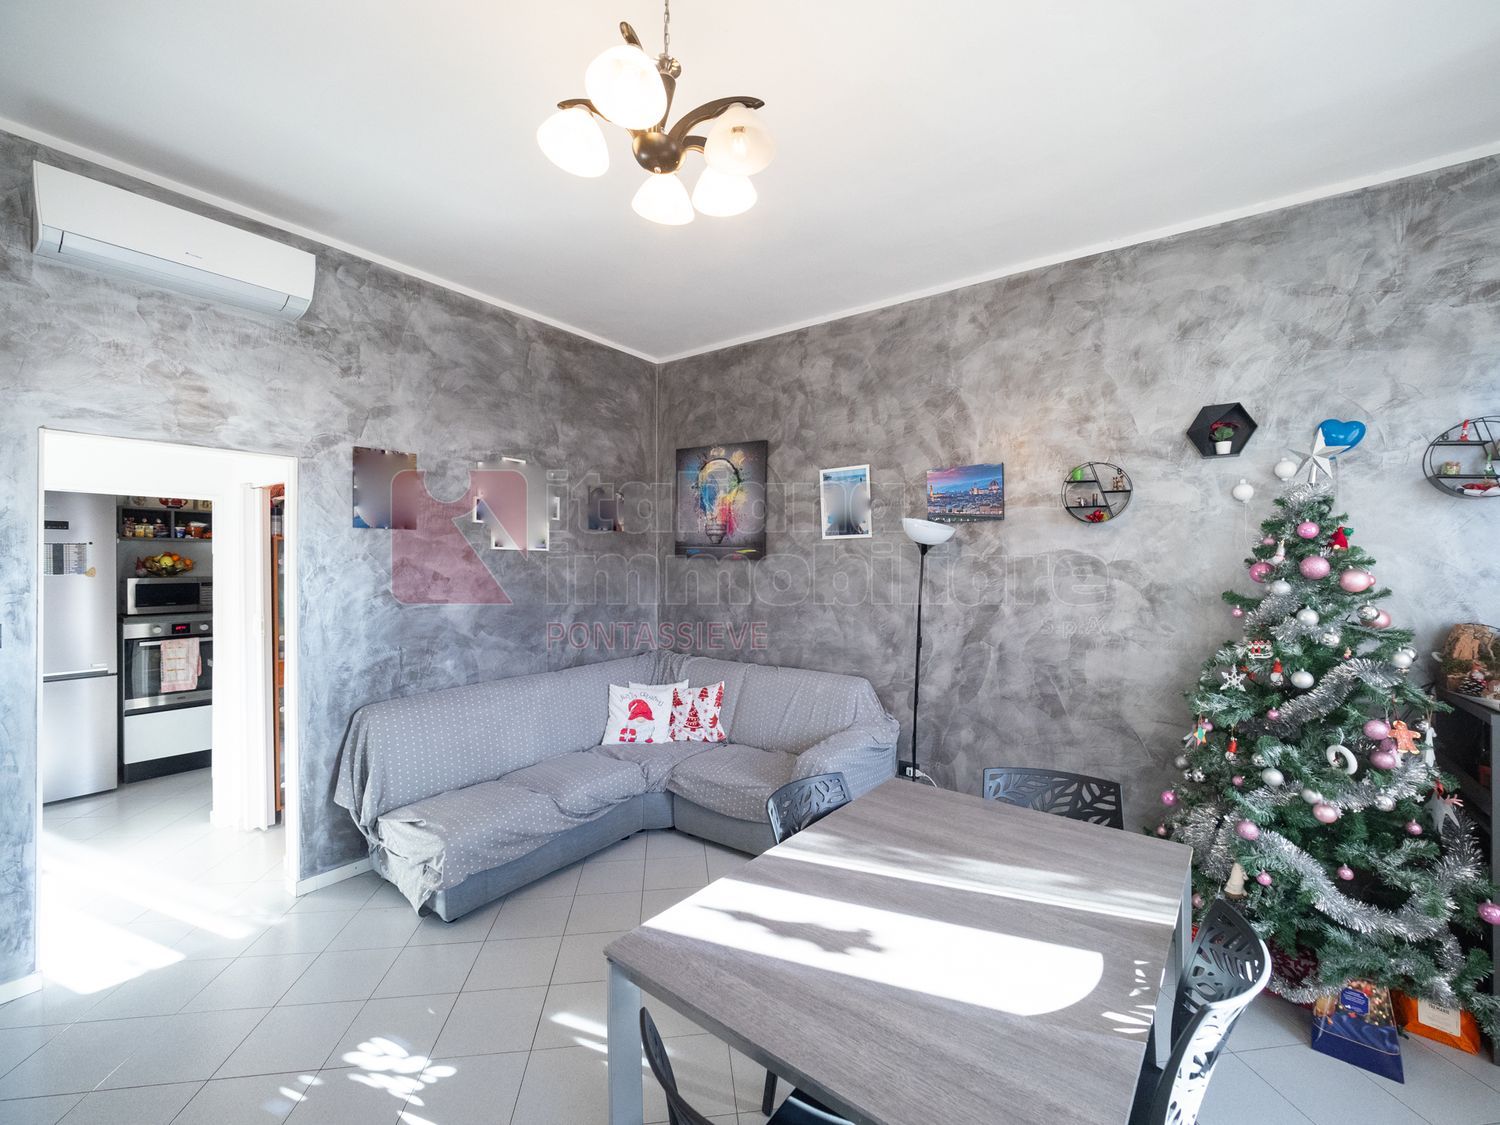 Appartamento in vendita a Pontassieve, 4 locali, prezzo € 175.000 | PortaleAgenzieImmobiliari.it